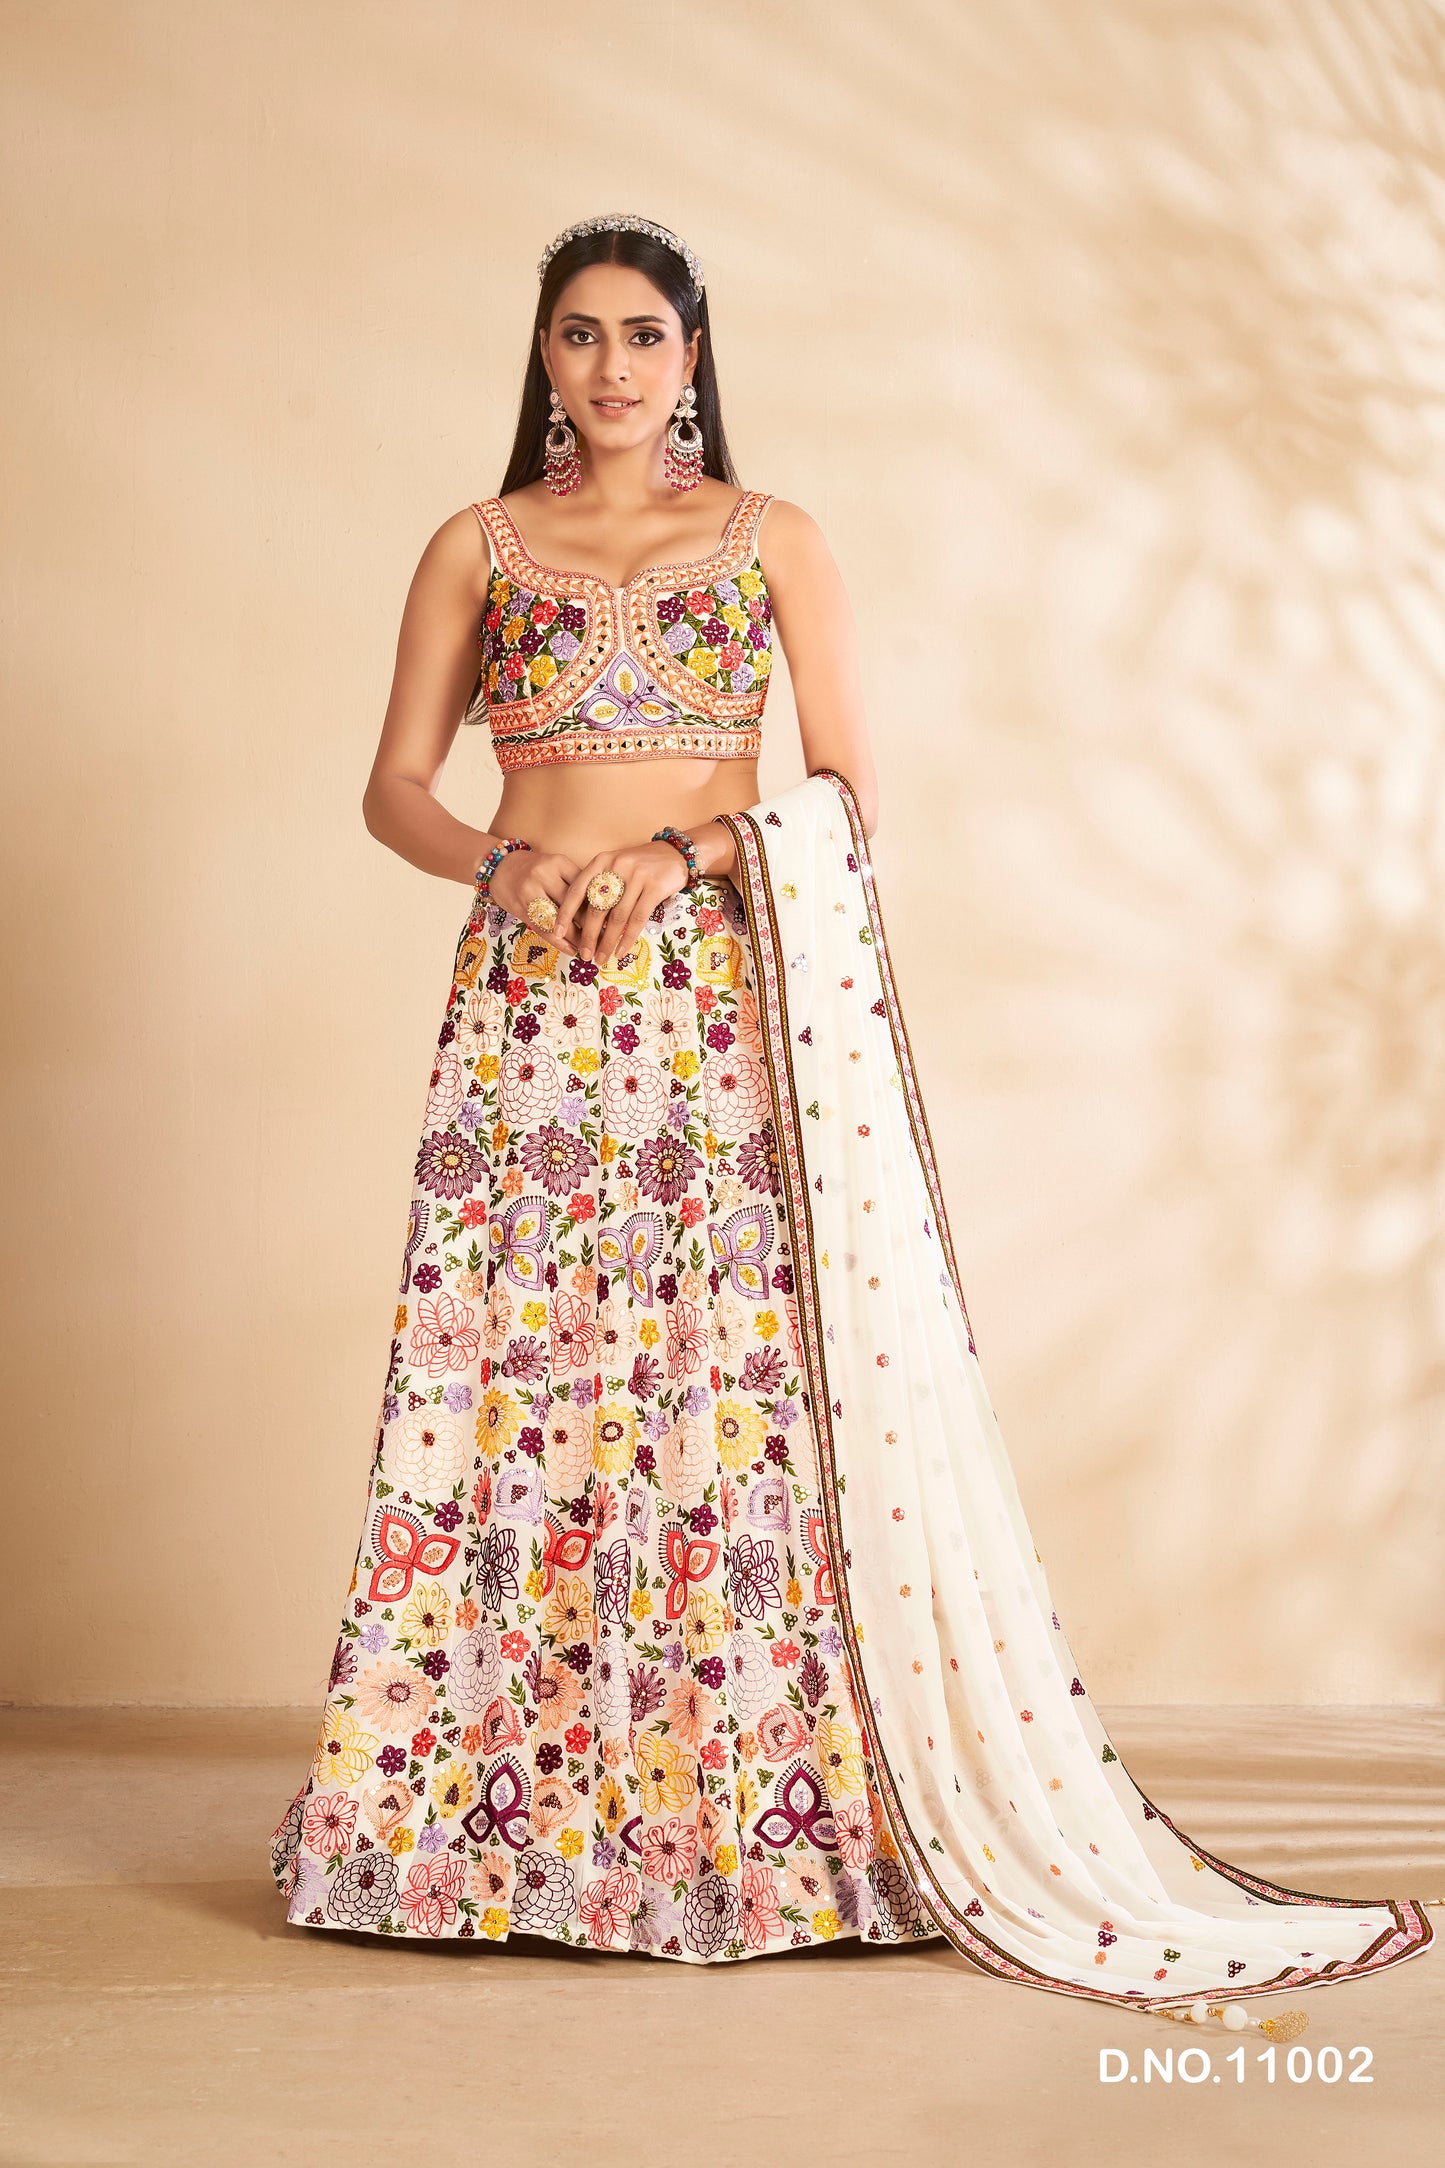 Amazing White Color Designer Lehenga Choli For Wedding Look